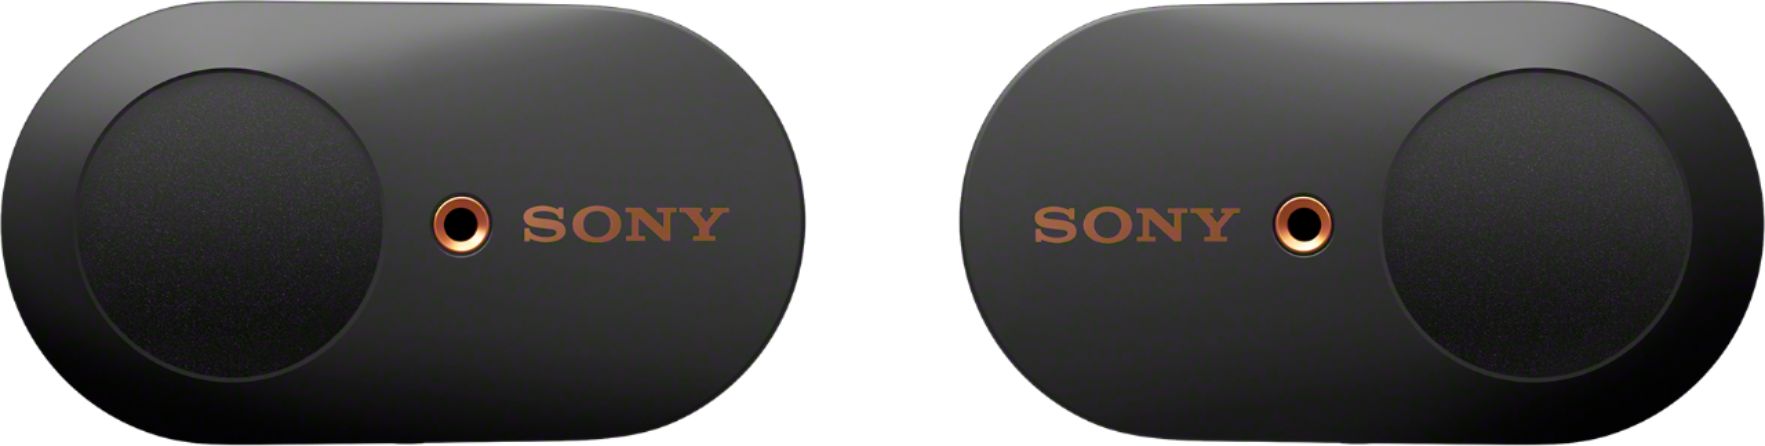 Sony WF-1000XM3 True Wireless Noise Cancelling In-Ear Headphones Black  WF1000XM3/B Best Buy